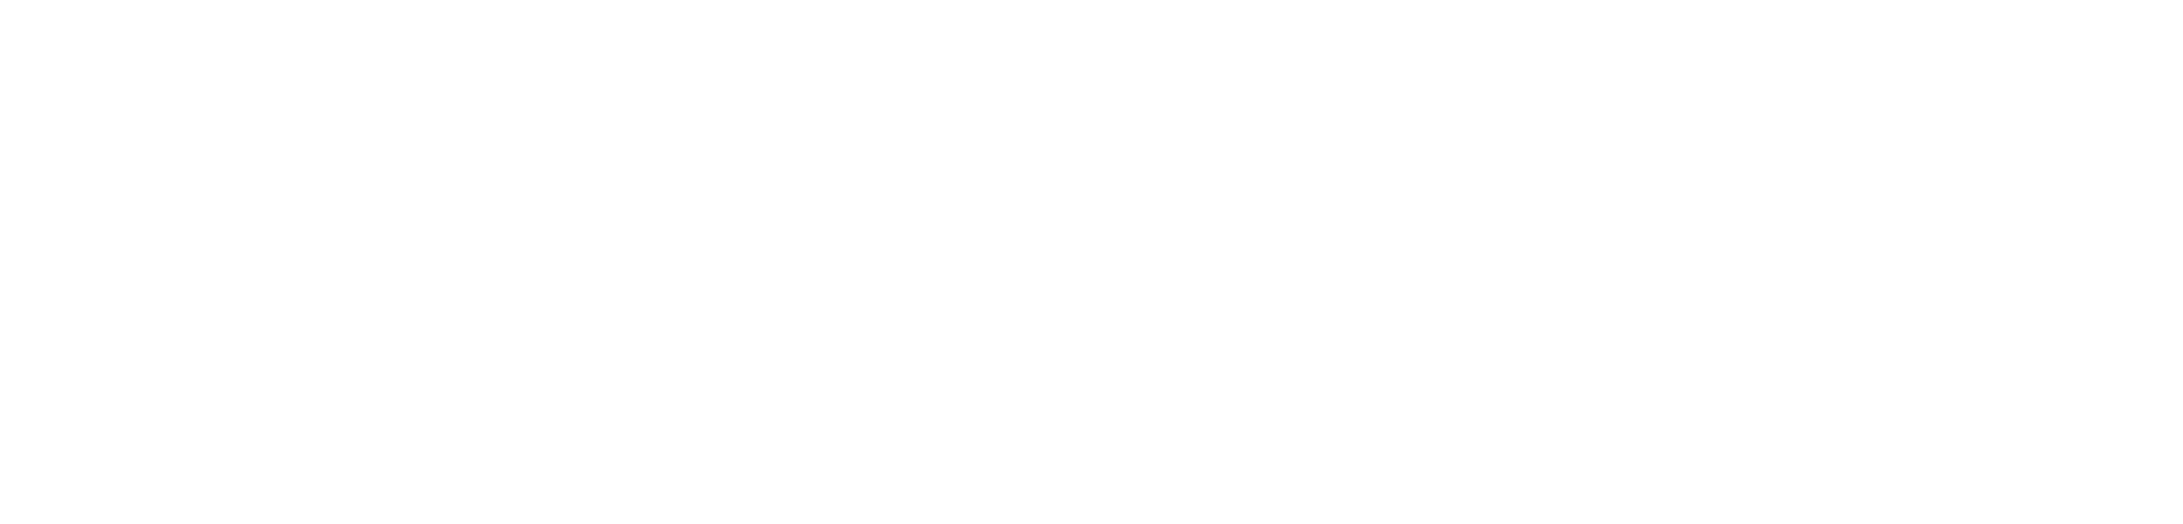 DDD会員サイト